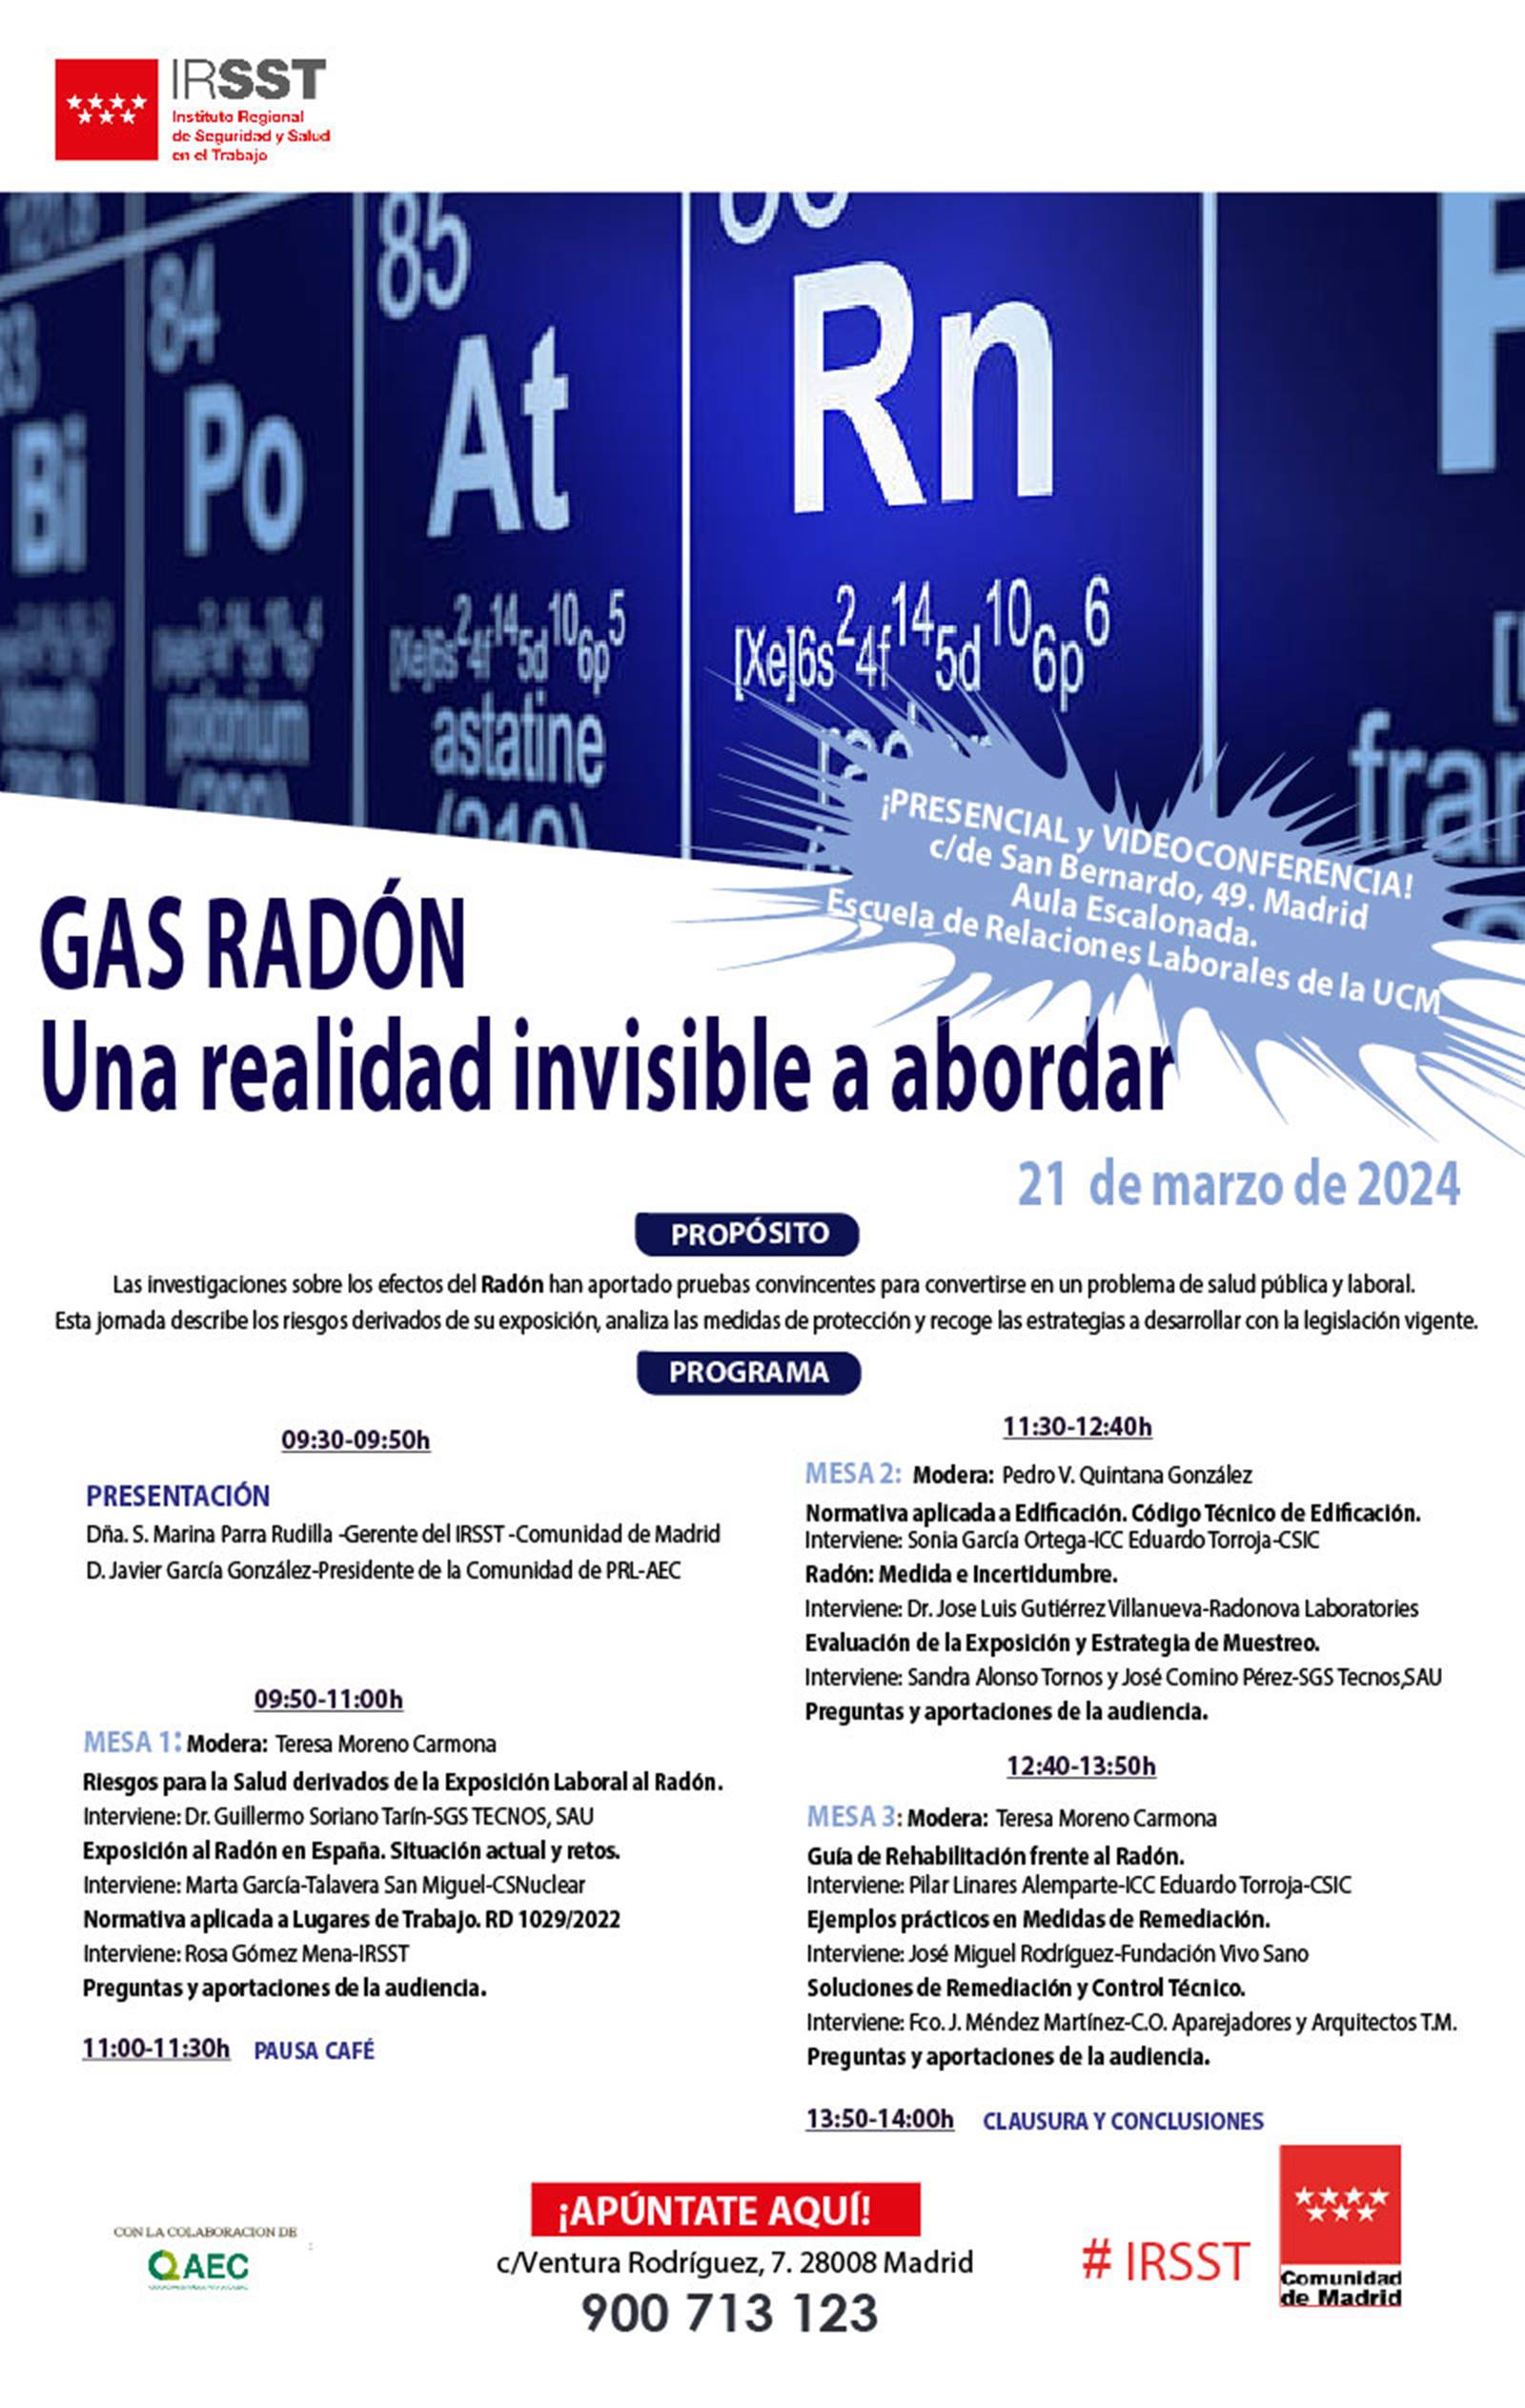 Gas radón, una realidad invisible a abordar